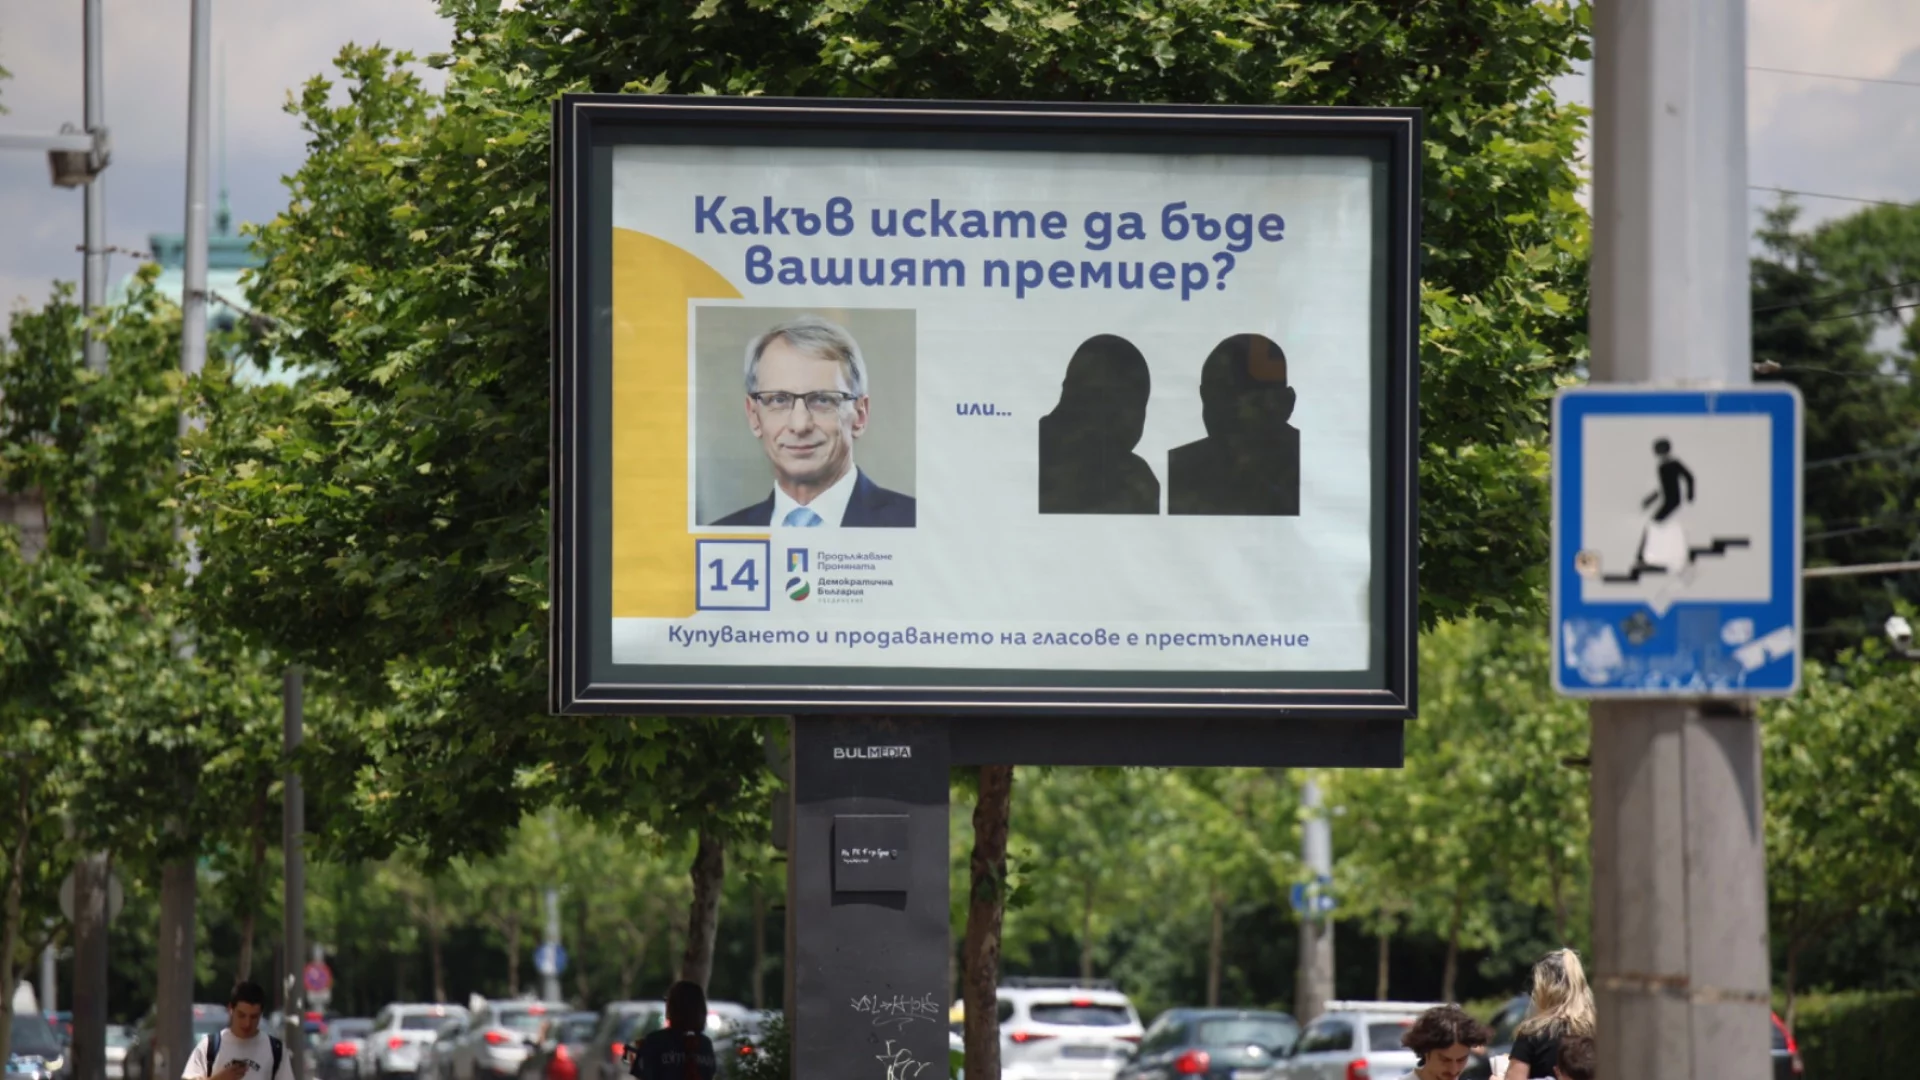 "Какъв искате да бъде вашият премиер?": ПП-ДБ върнаха билбордовете, но със силуетите на Борисов и Пеевски